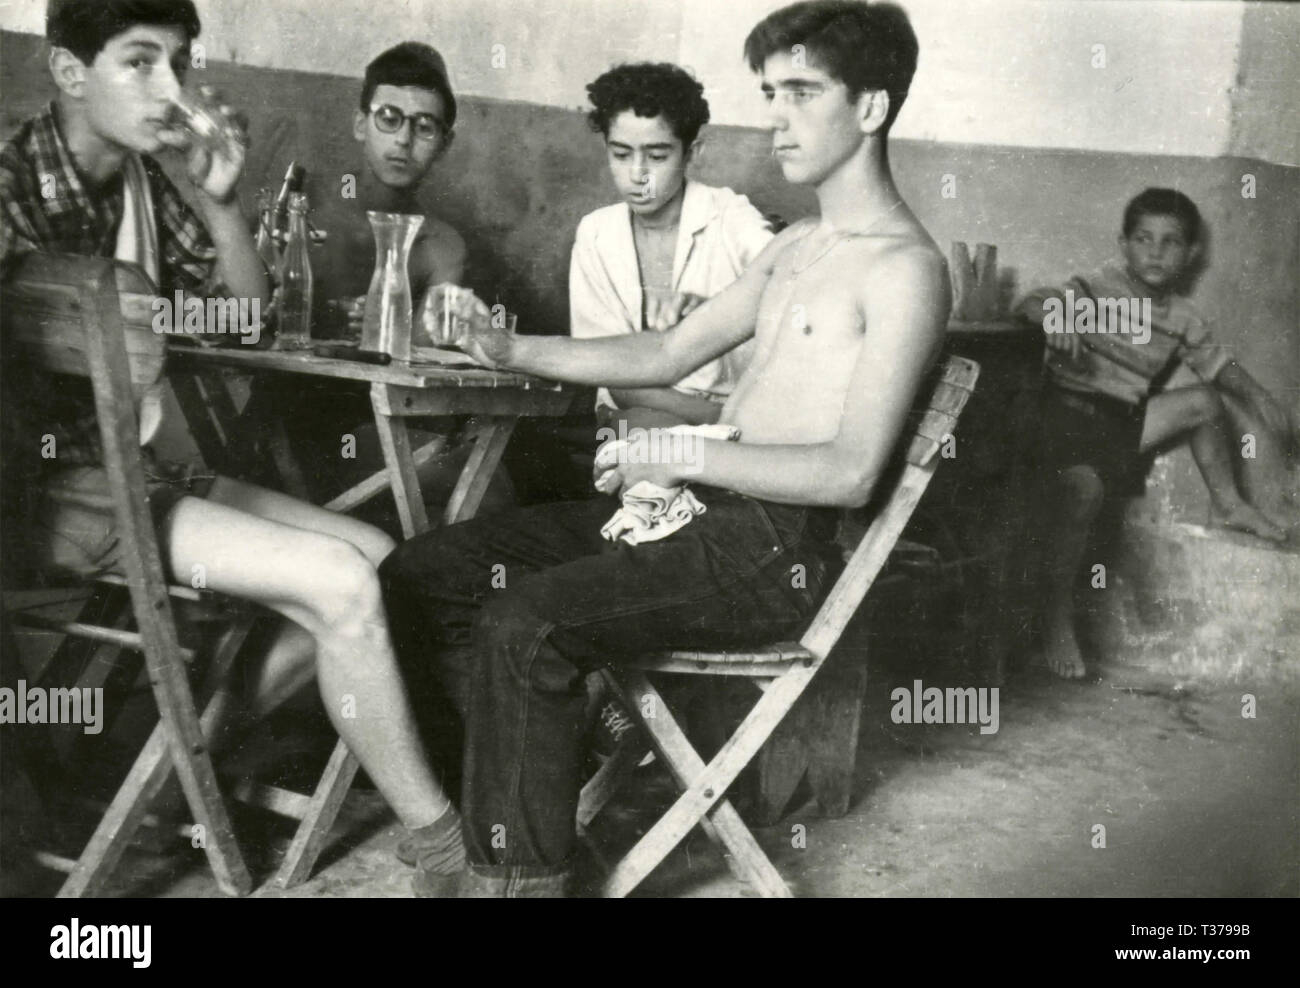 Giovani ragazzi dentro un bar, Italia degli anni cinquanta Foto Stock